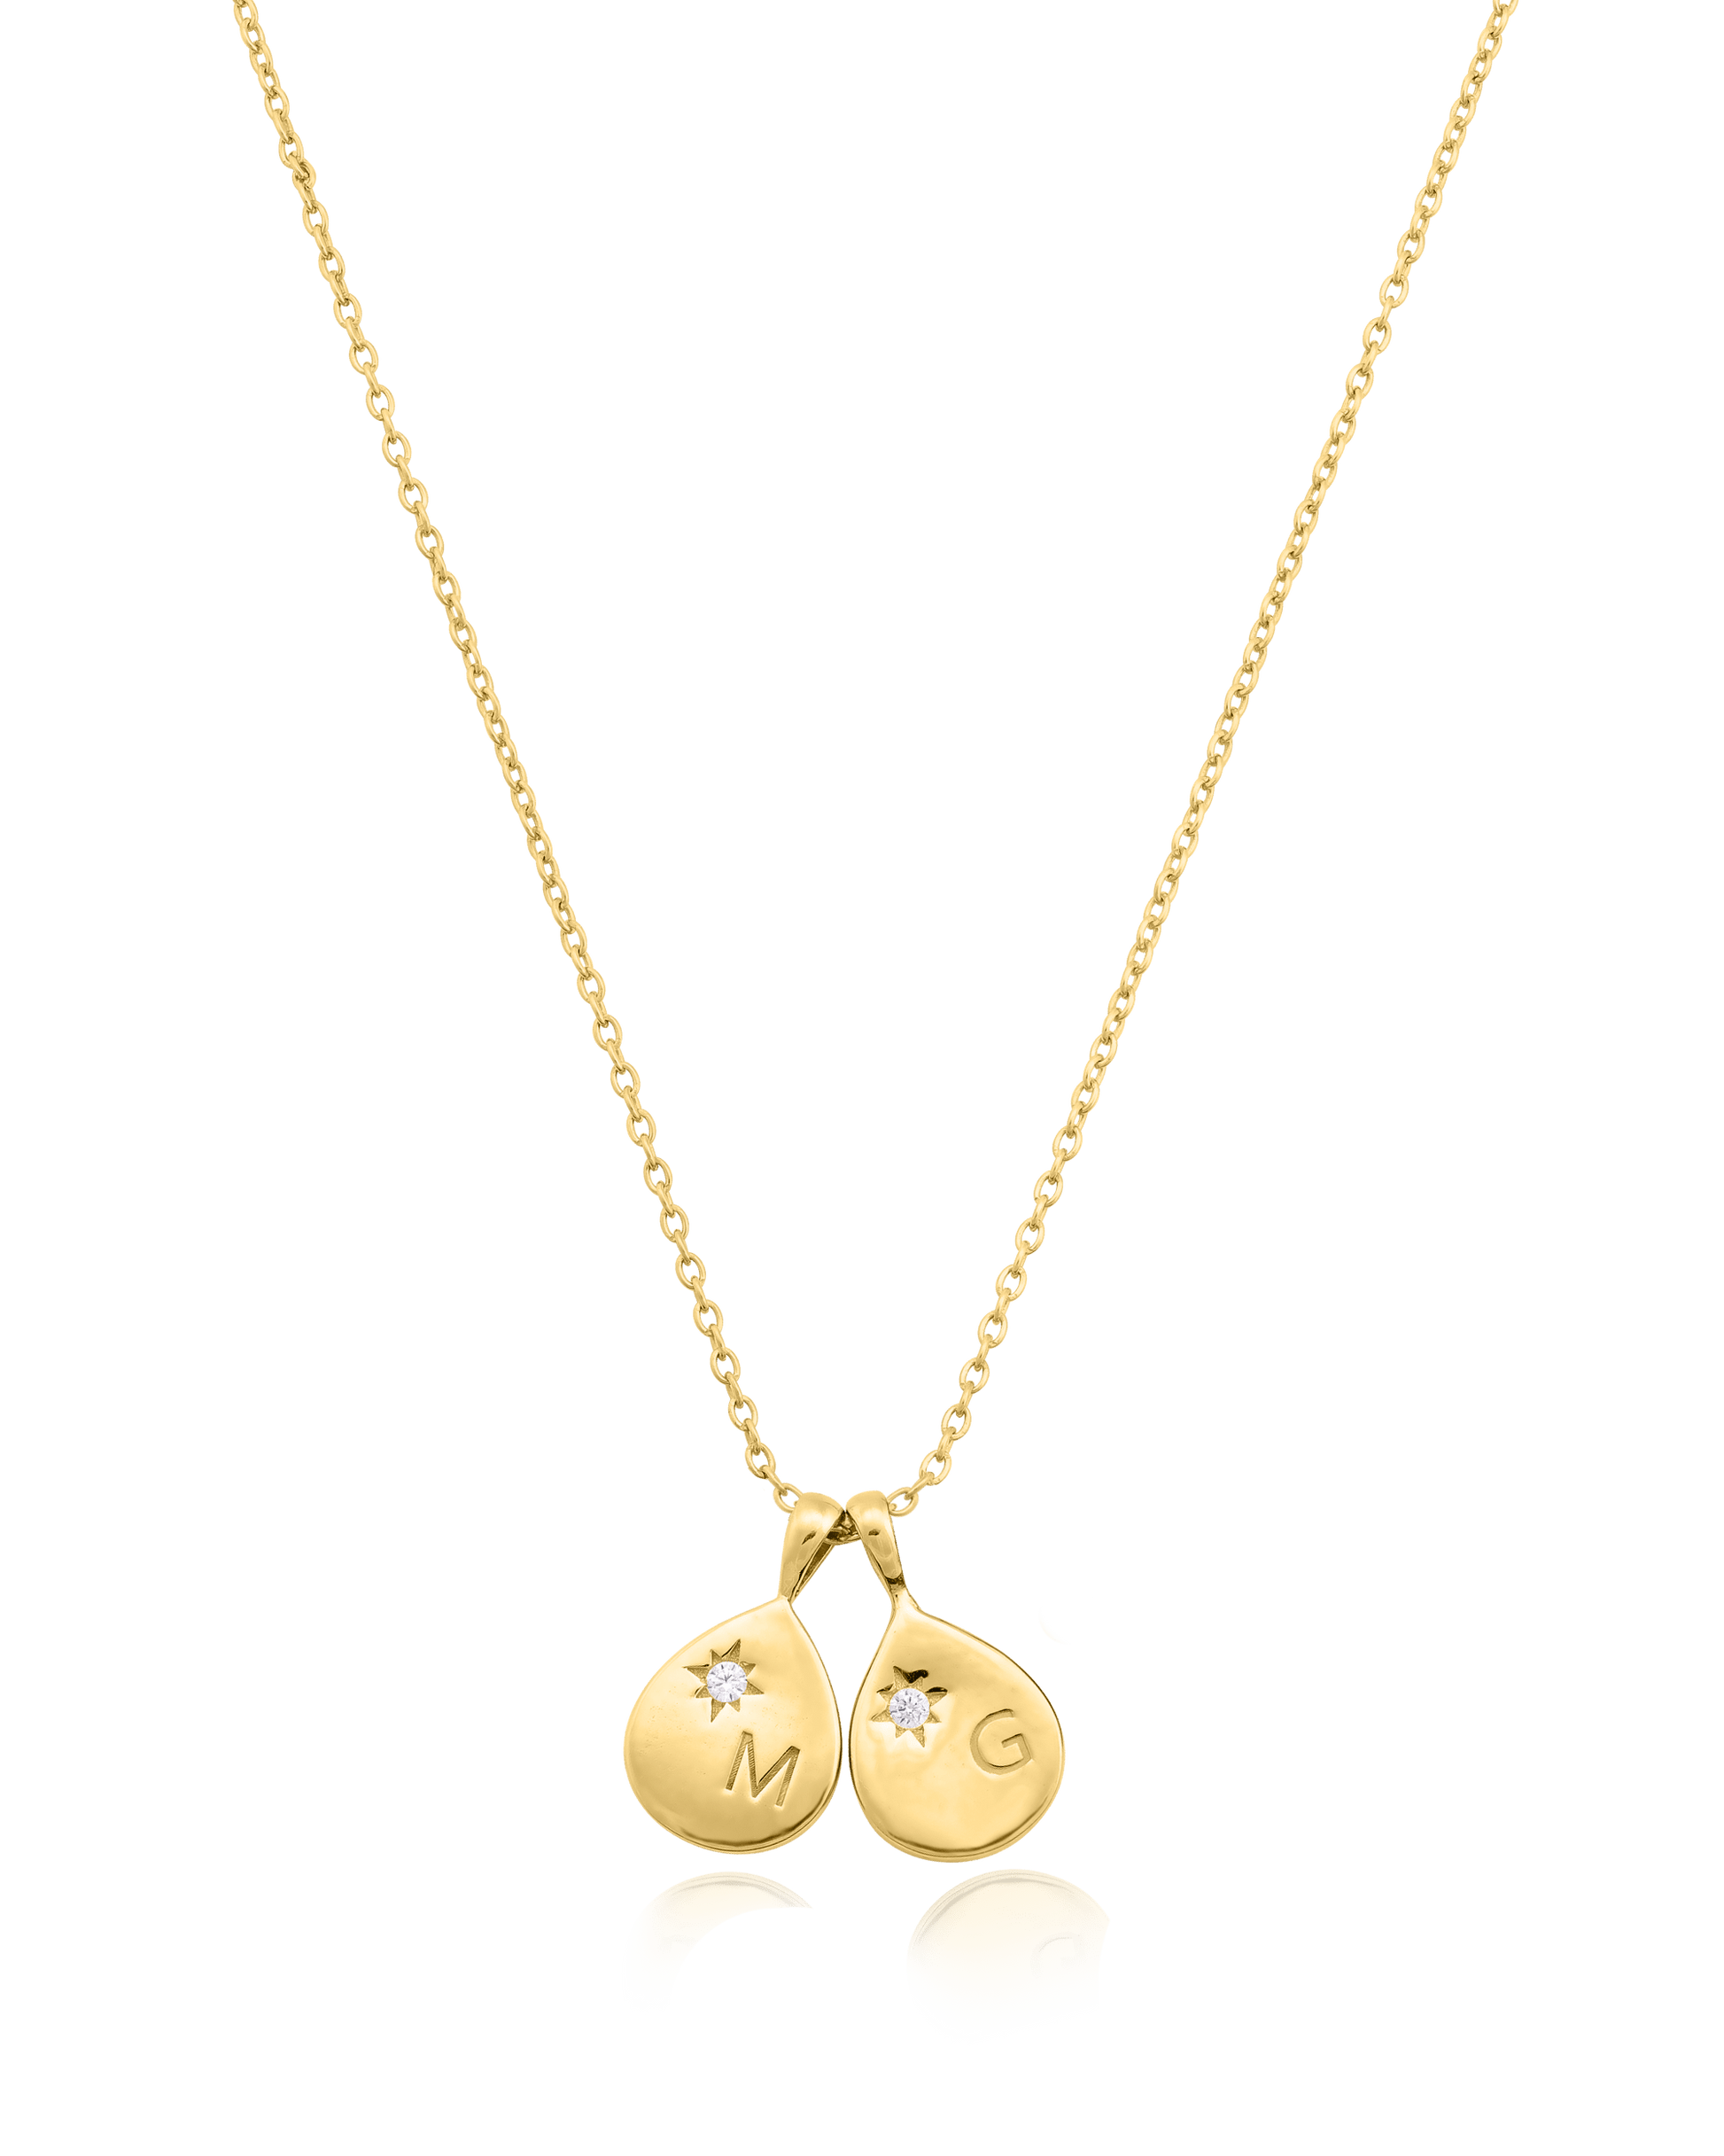 Diamond Drop Initial Necklace - 18K Gold Vermeil Necklaces magal-dev 2 Drops 16”+2” extender 